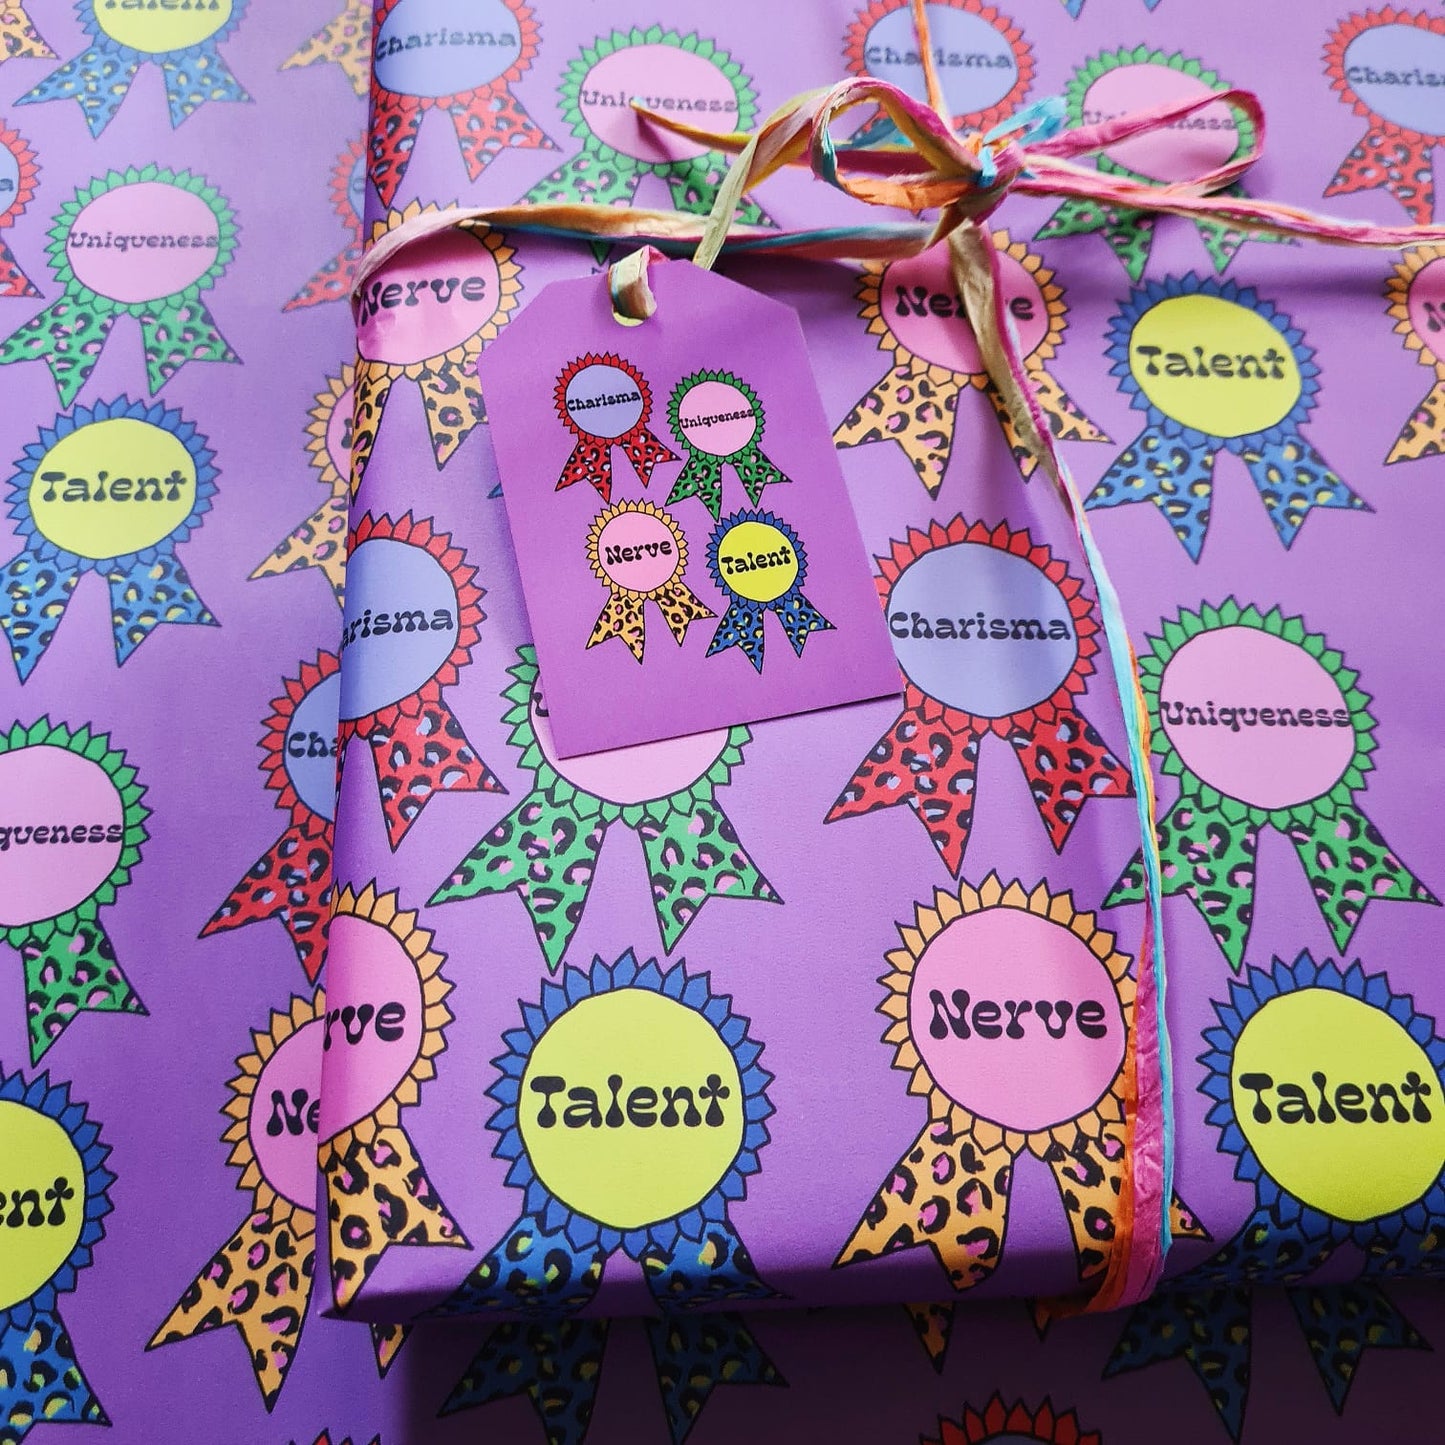 Charisma, Uniqueness, Nerve & Talent Gifting Bundle